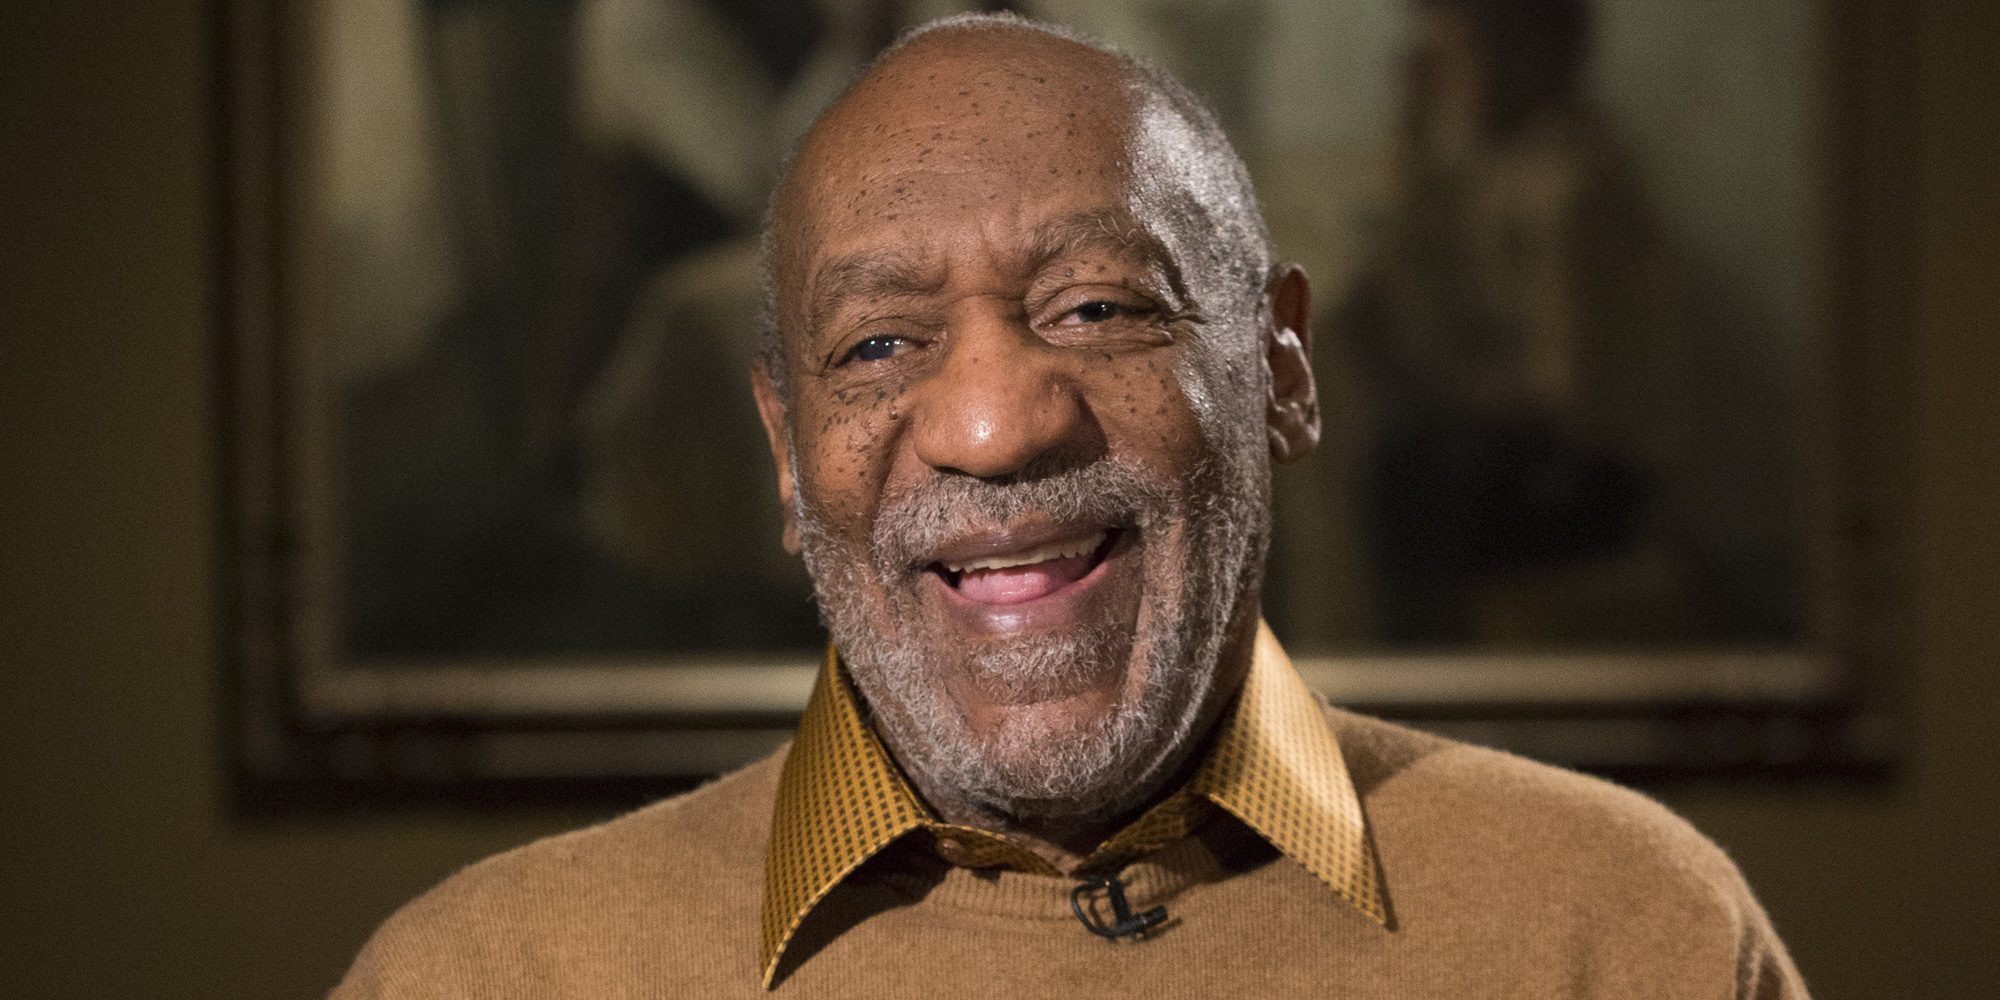 Bill Cosby asegura estar completamente ciego: "Hace dos años desperté y le dije a mi mujer que no veía nada"